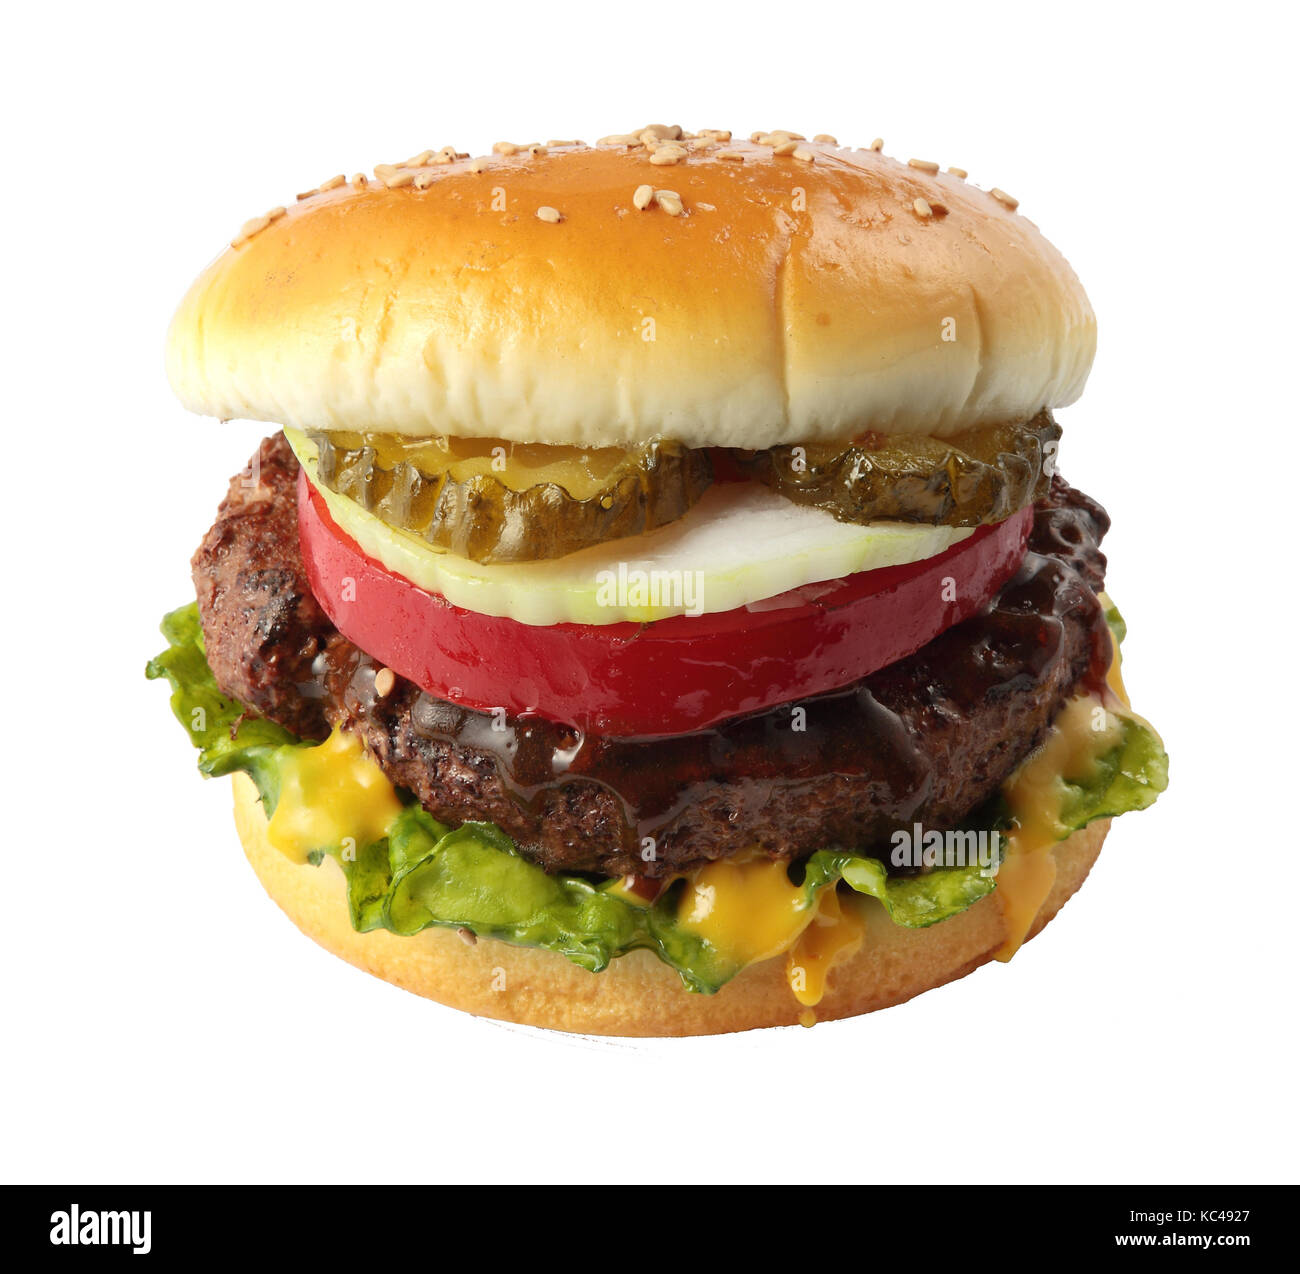 Delicious hamburger isolated on white background Stock Photo